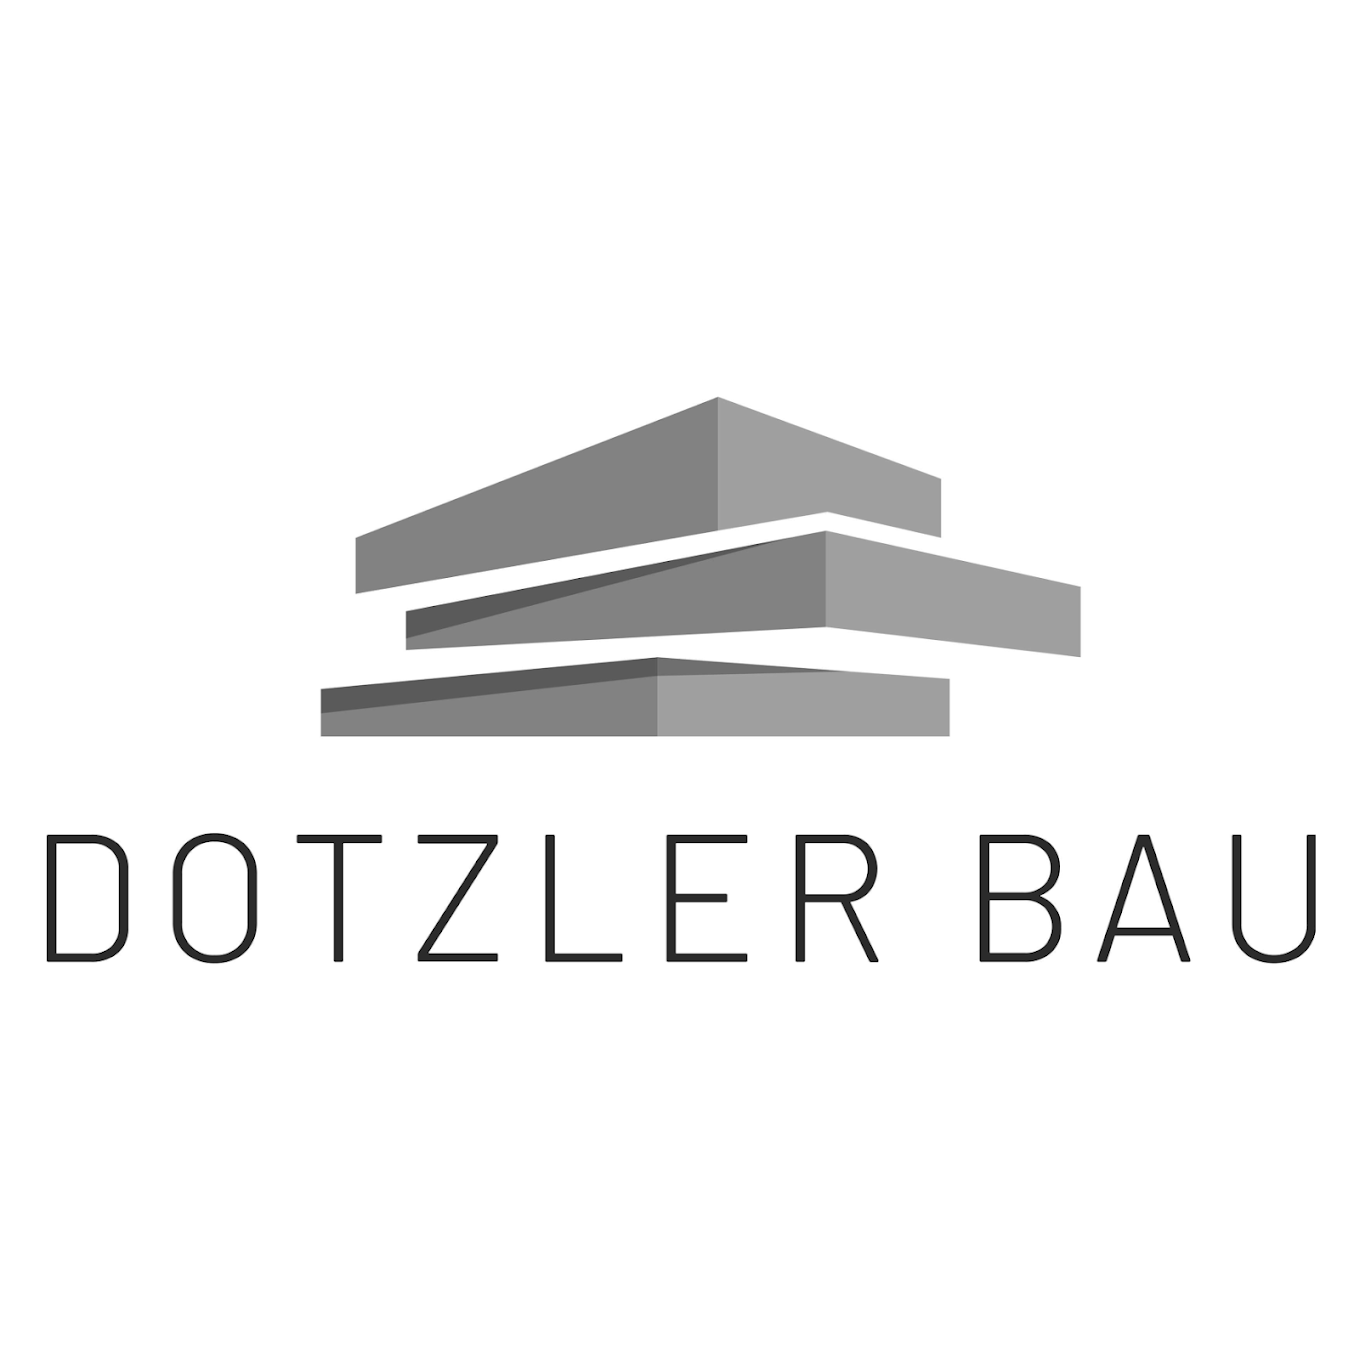 Dotzler Bau GmbH in Schnaittach - Logo